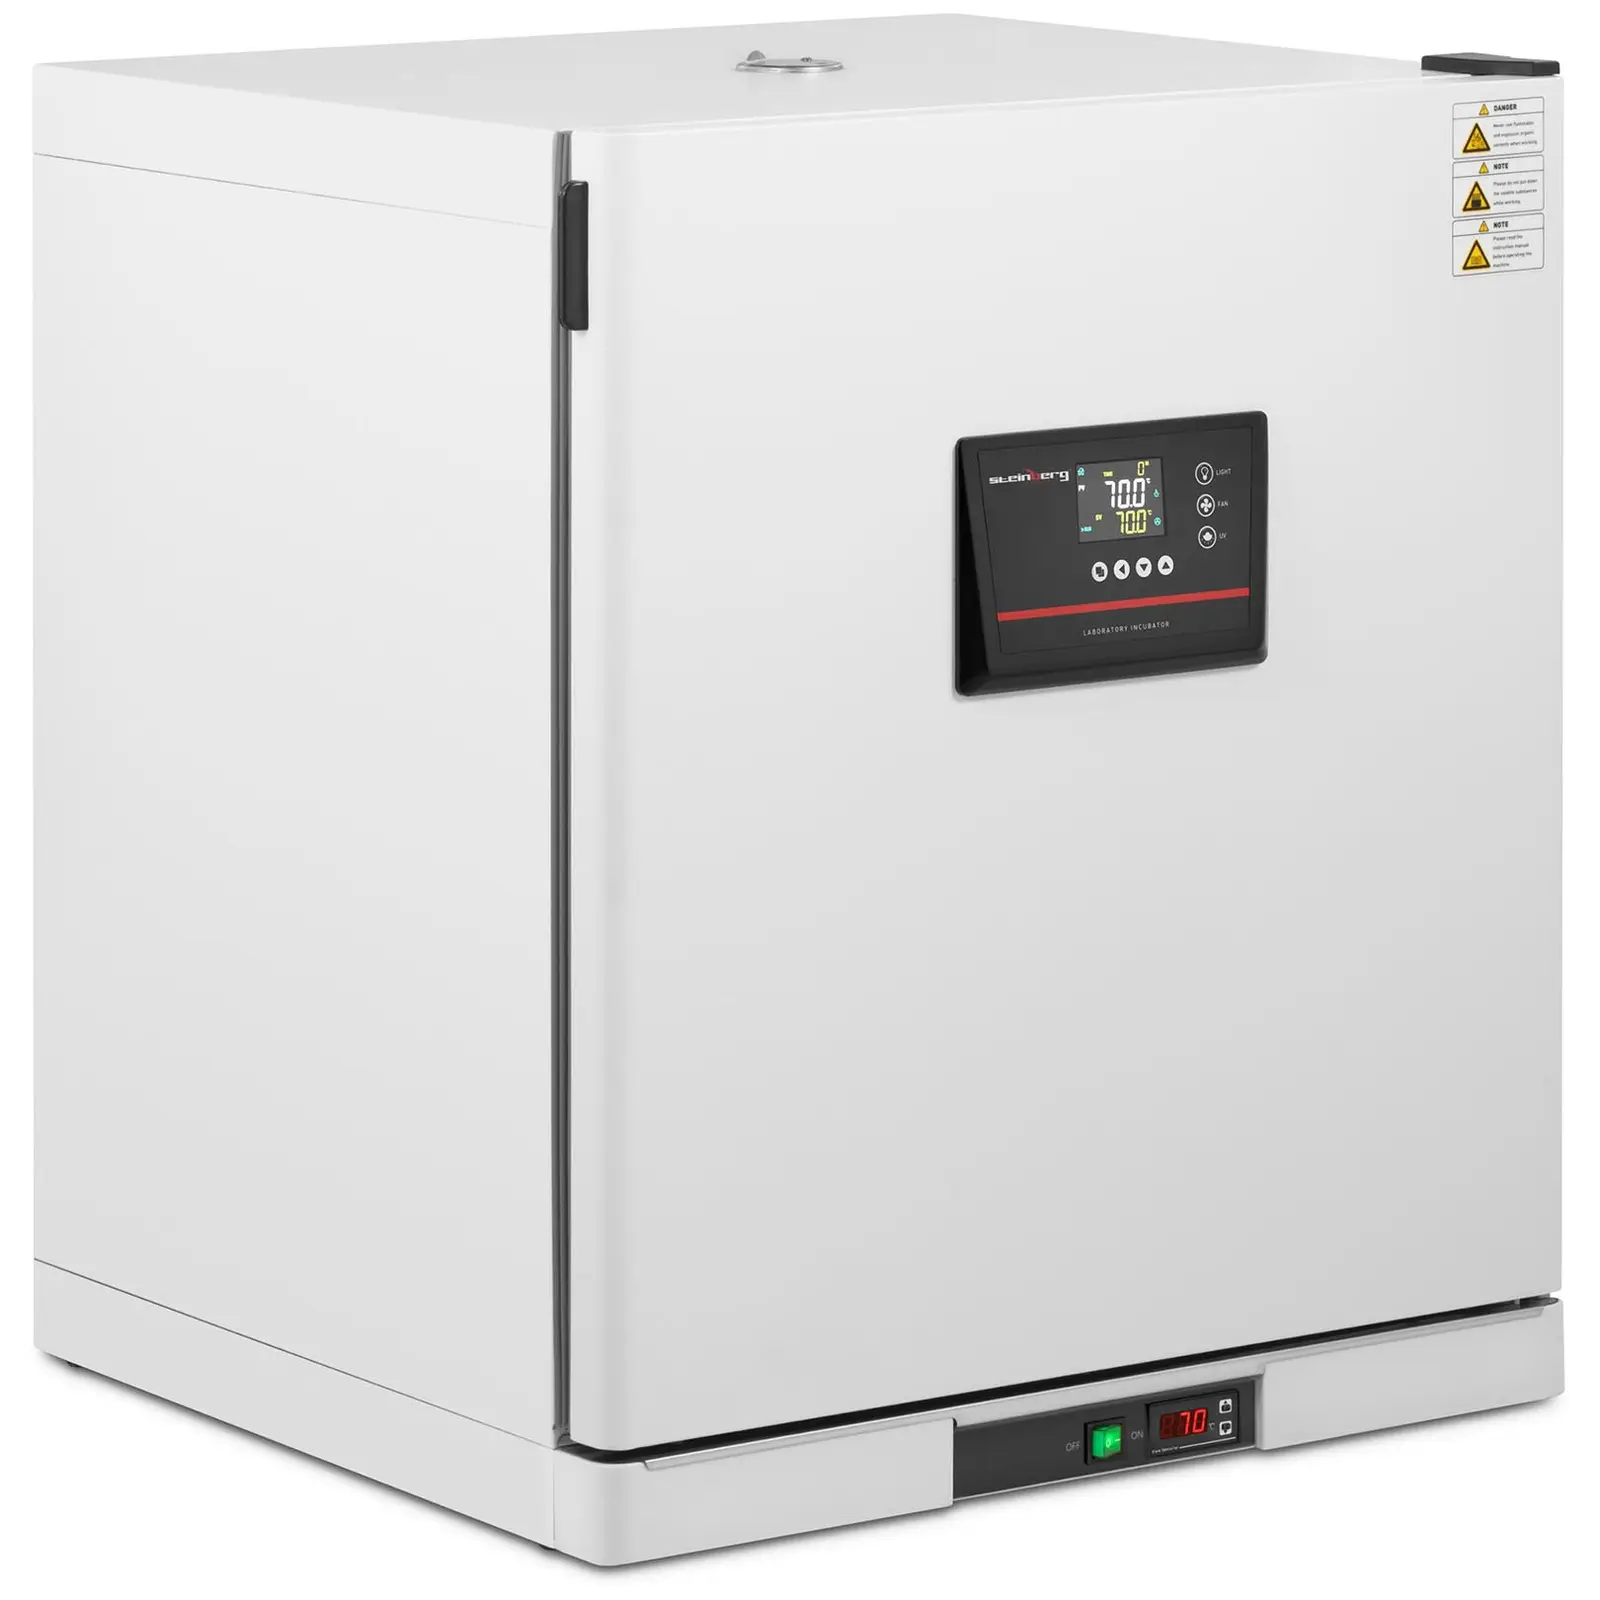 Laboratorieinkubator - 5 - 70 °C - 210 L - luftsirkulasjon